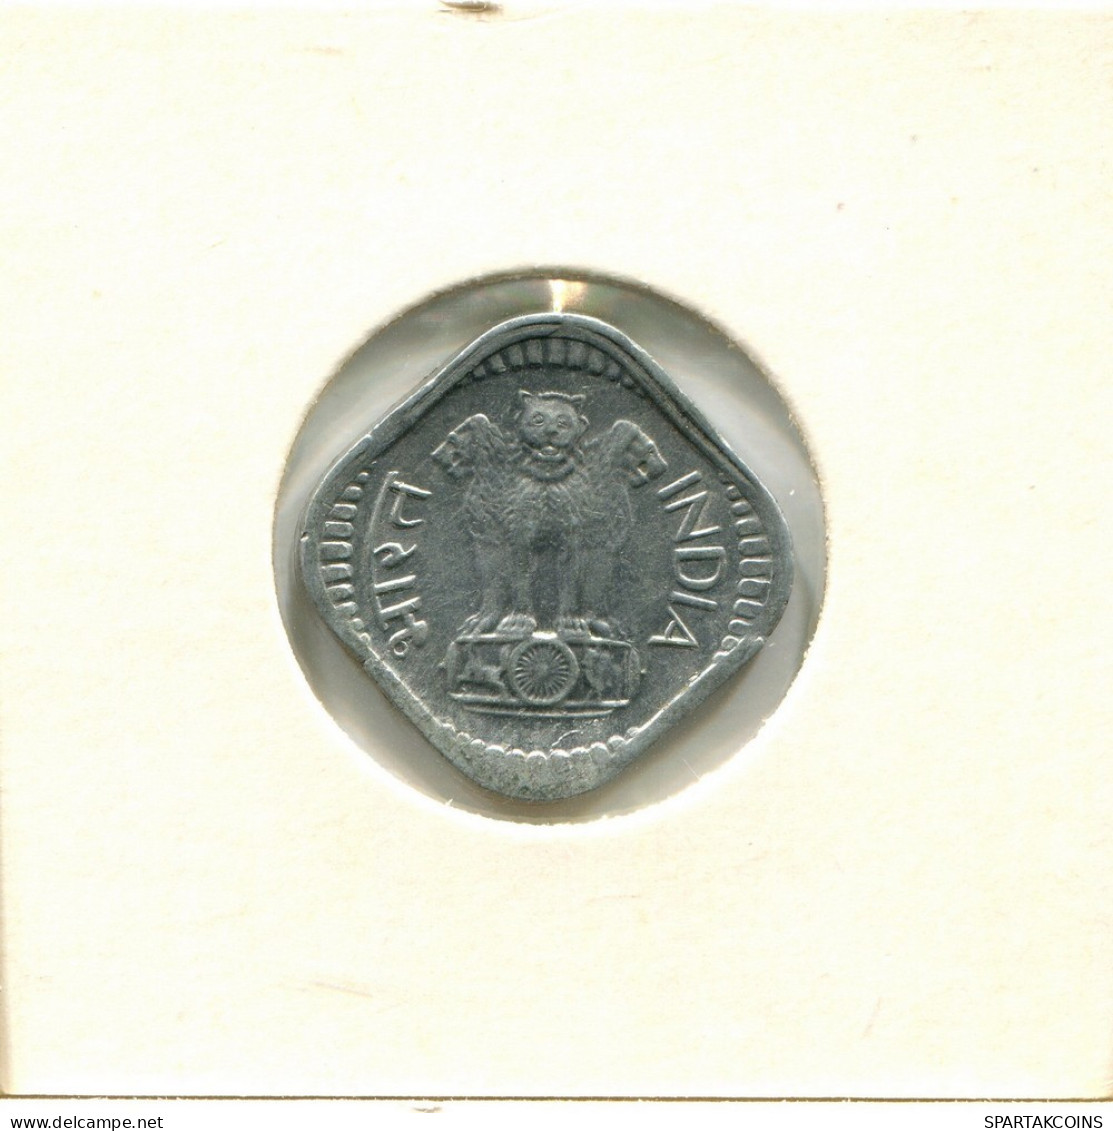 5 PAISE 1982 INDIA Moneda #AY740.E.A - India